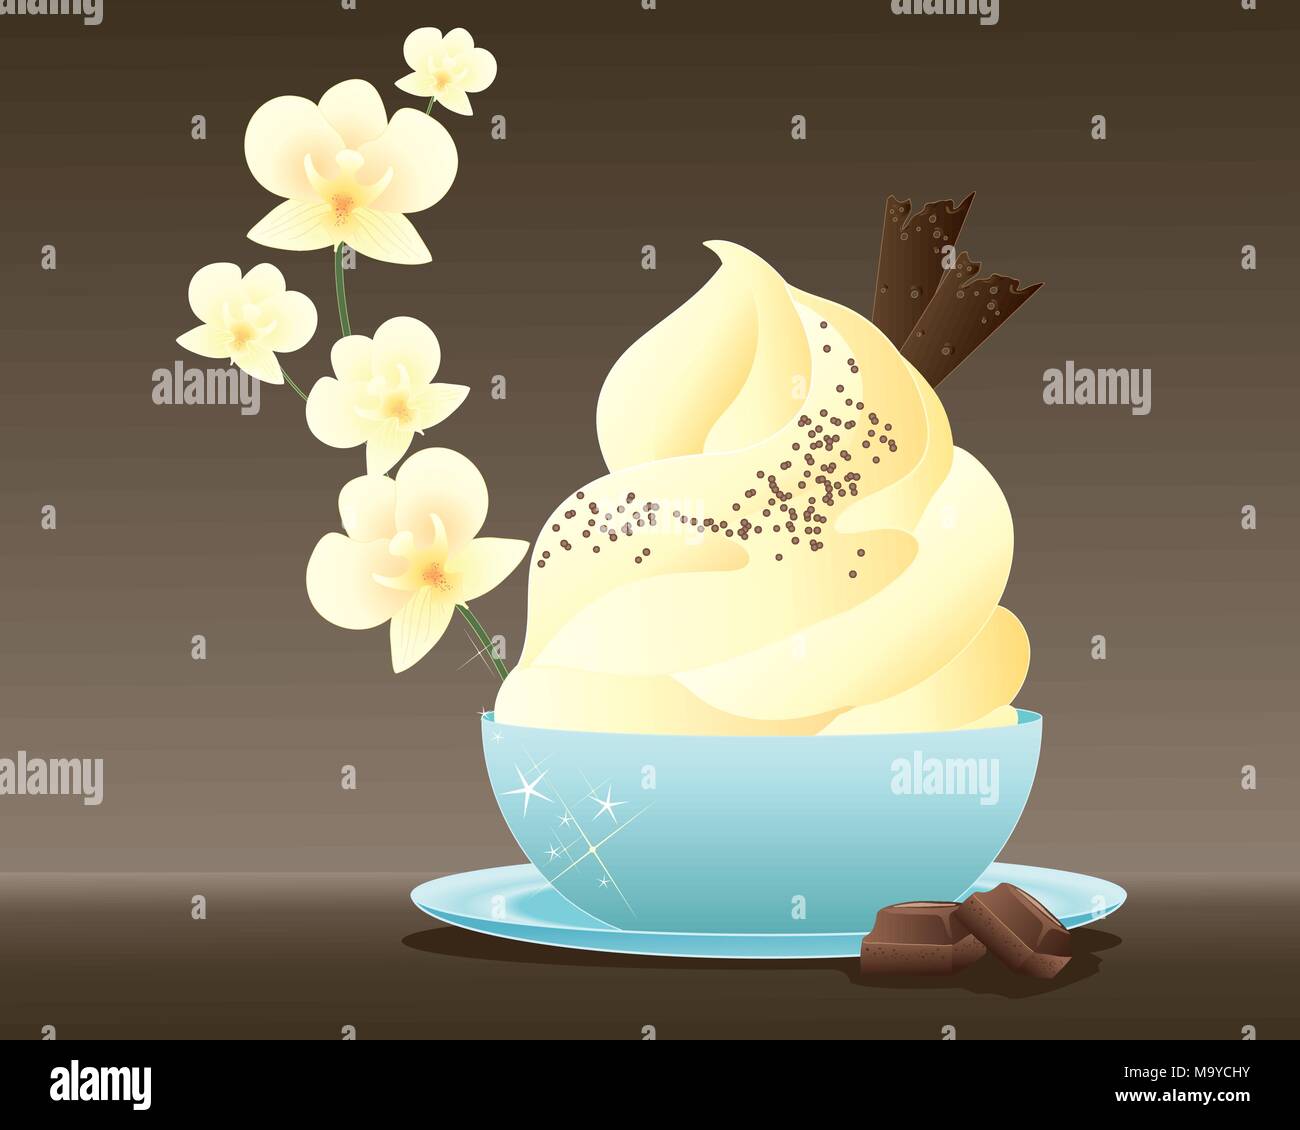 Un vecteur illustration en eps 10 format d'une délicieuse crème glacée dessert avec décoration vermicelles de chocolat dans un bol bleu avec détails orchidée vanille Illustration de Vecteur